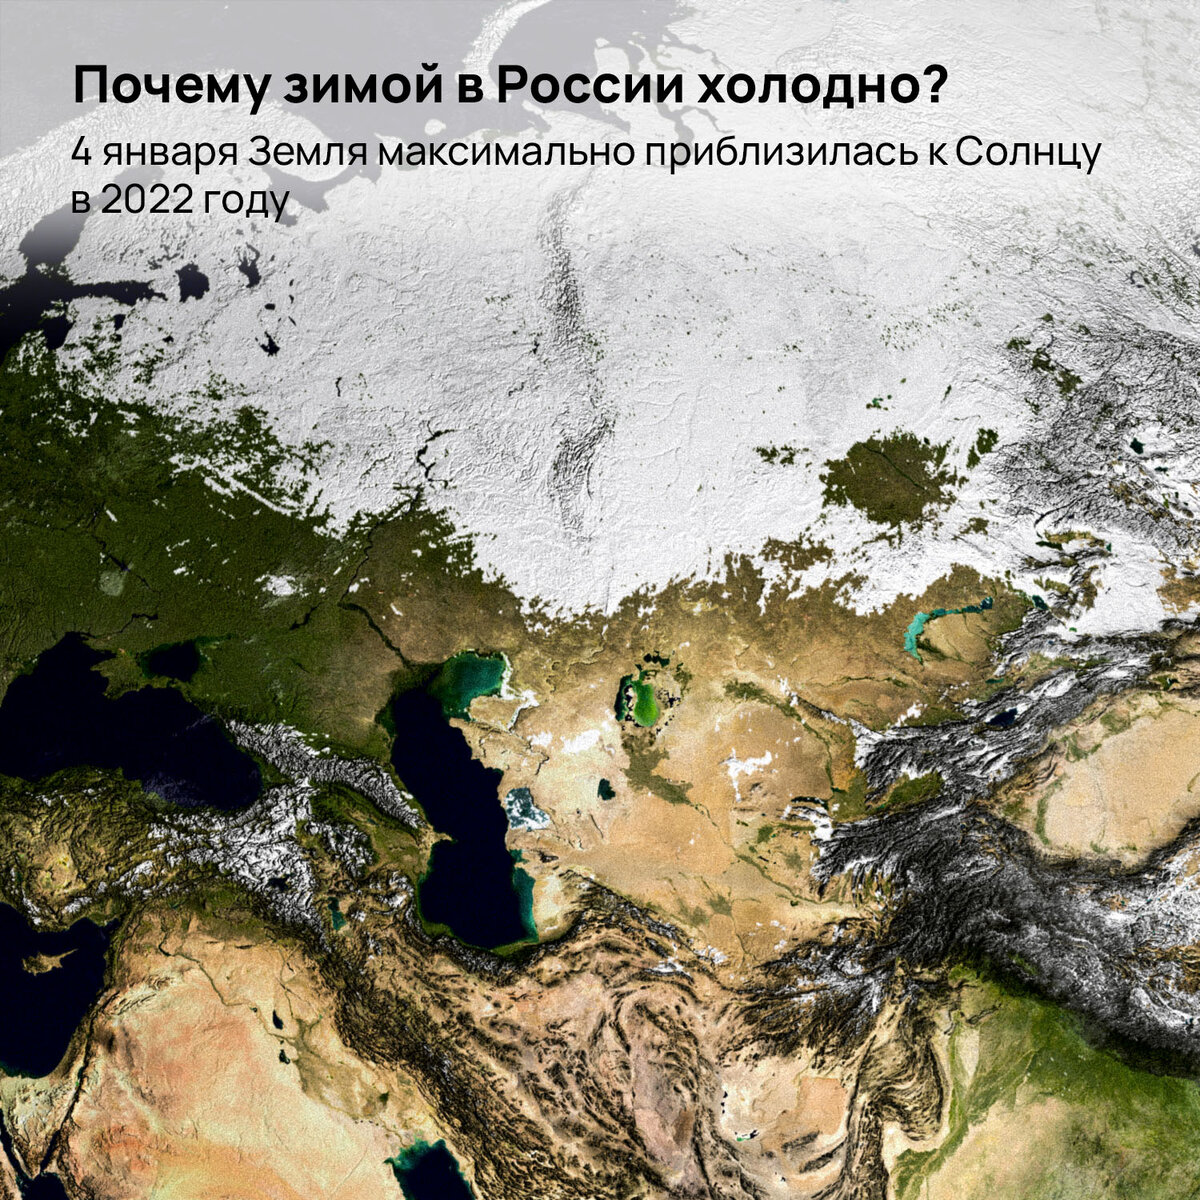 В россии весь холодный. Земля 2022 года. Почему в России холодно. Самый короткий день в 2022 зимой в России. Почему зимой холодно.